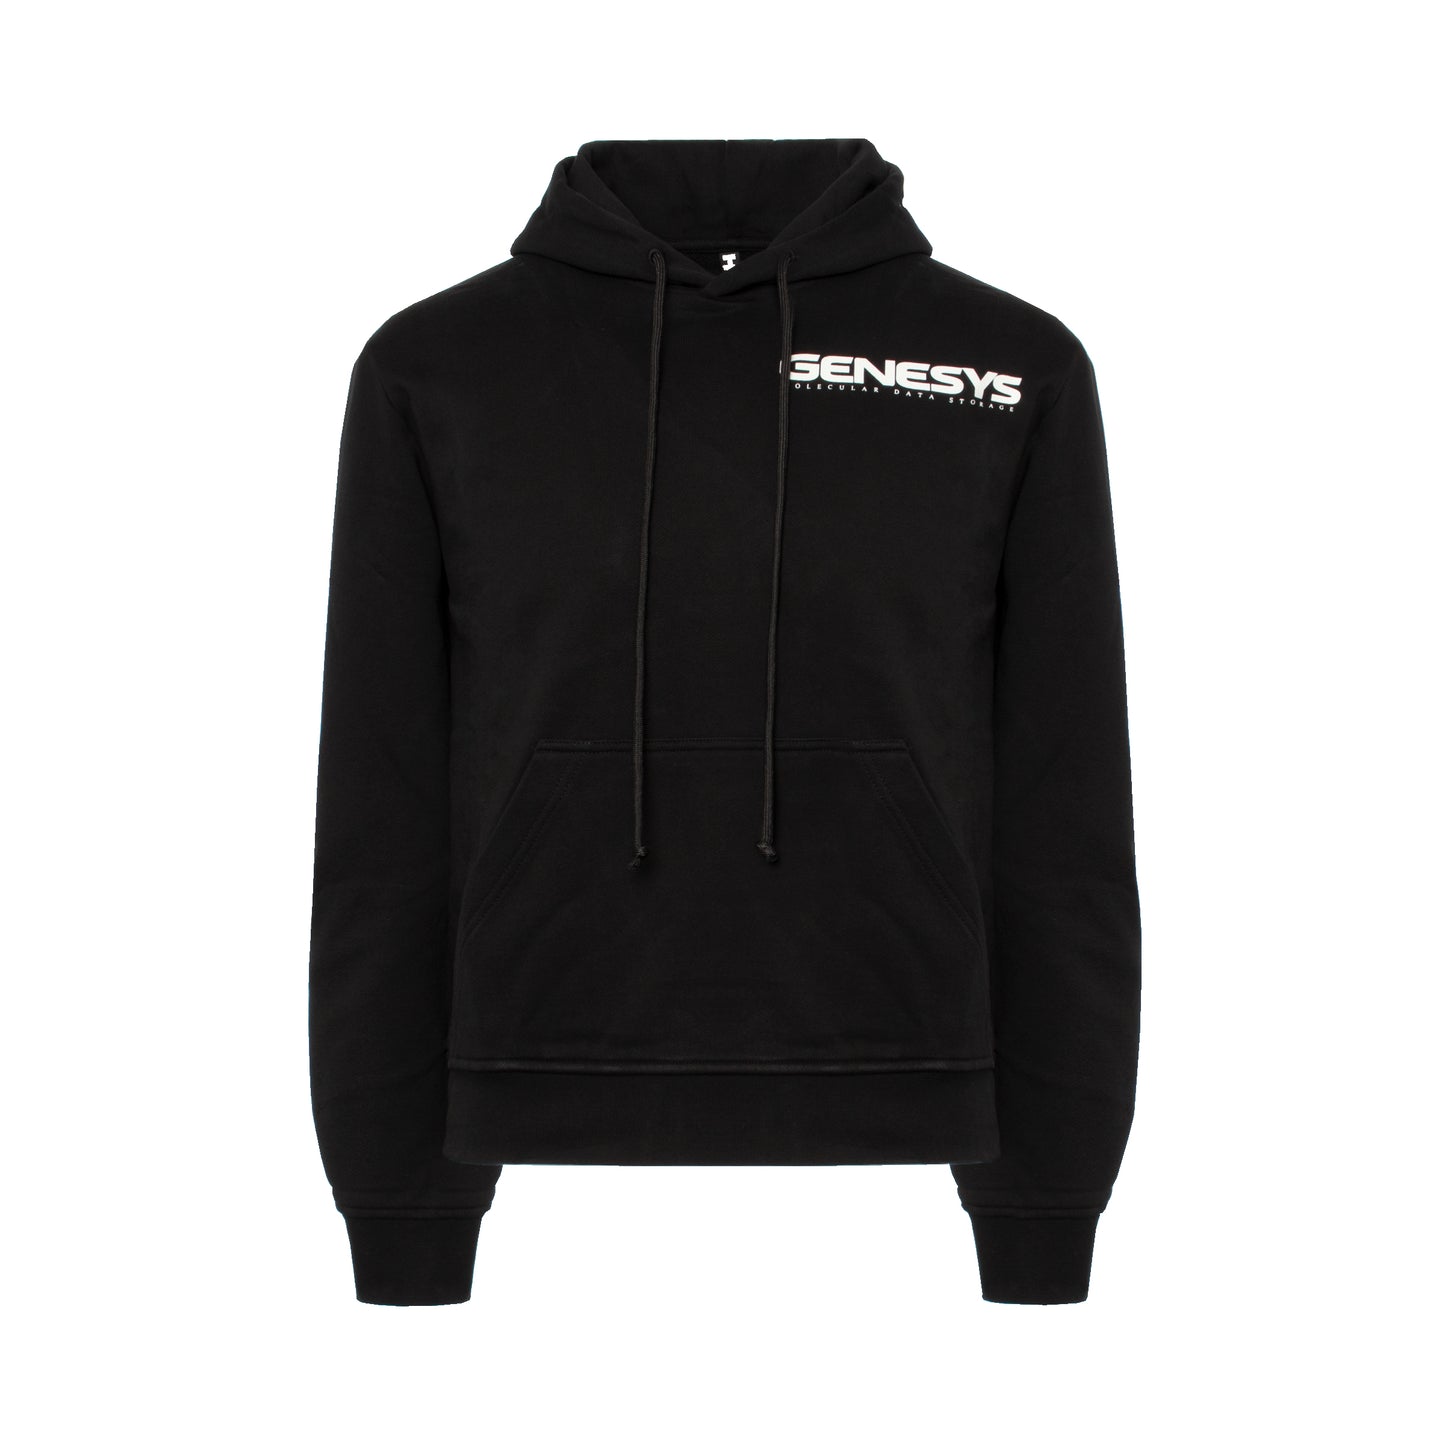 Genesis Hoodie Sweatshirt in Black